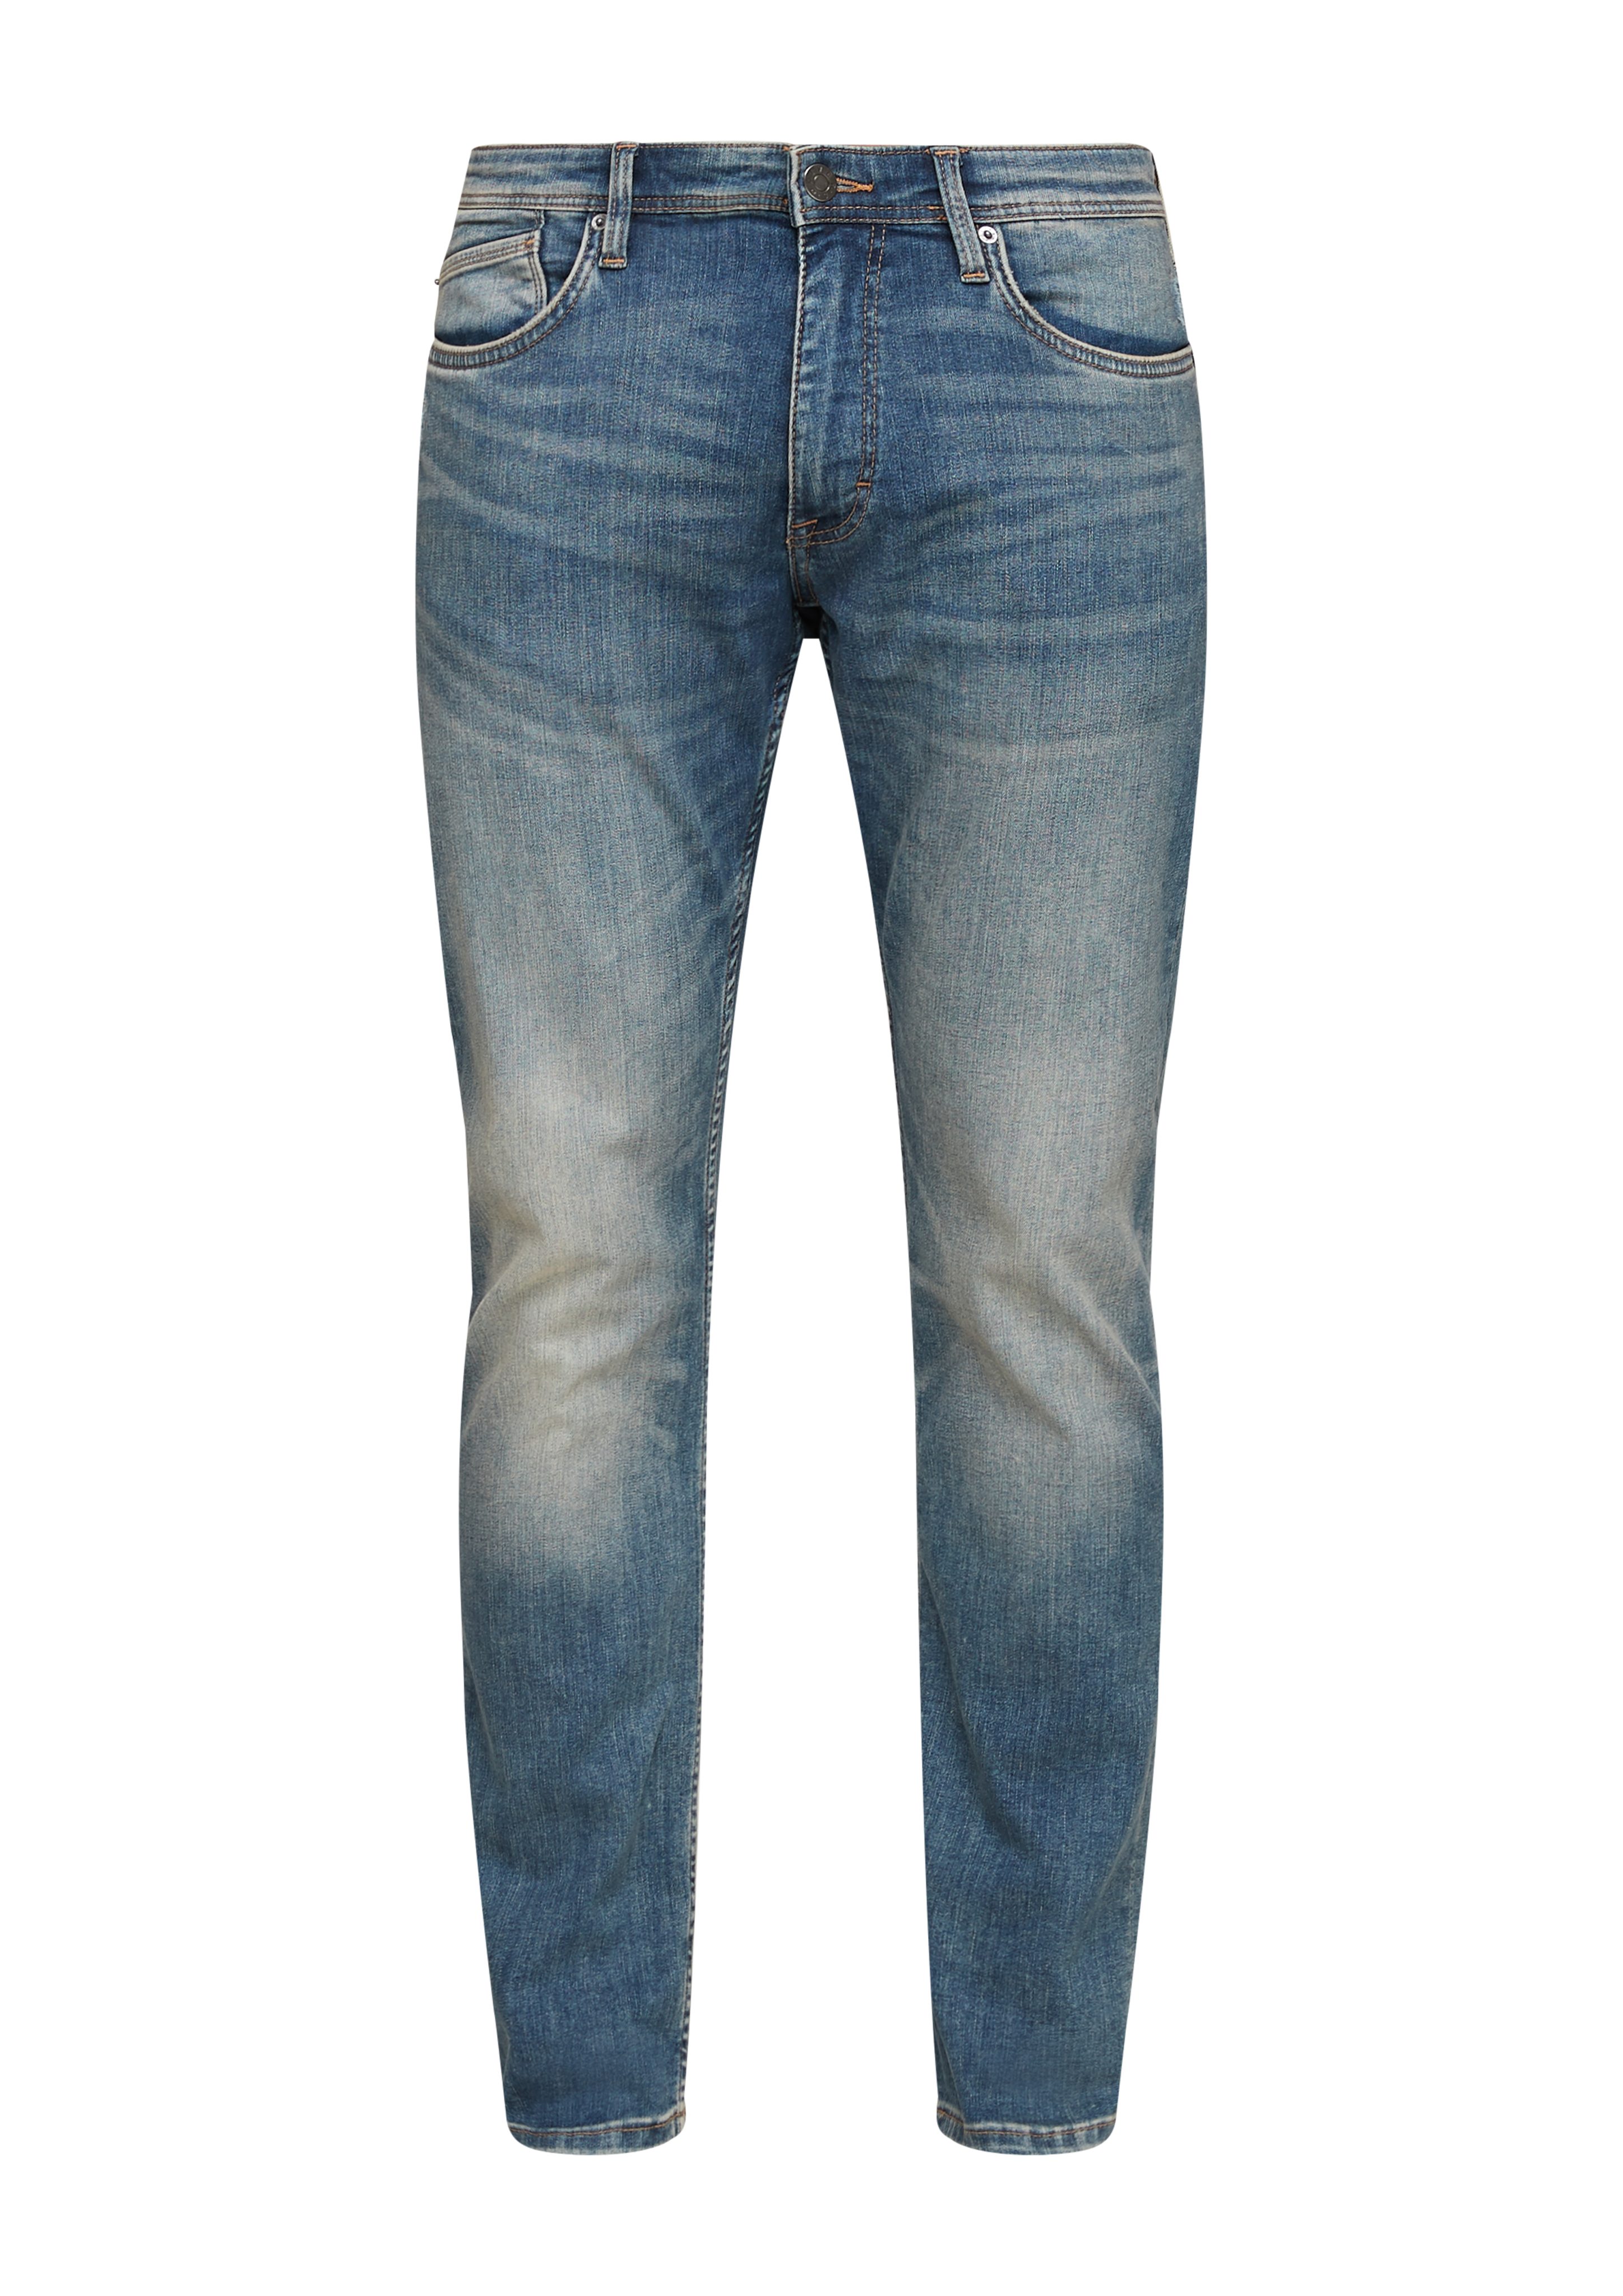 Rise 5-Pocket-Jeans Jeans / Mid Leg sretche Slim s.Oliver Destroyes, / Keith Slim Waschung / Fit blue light